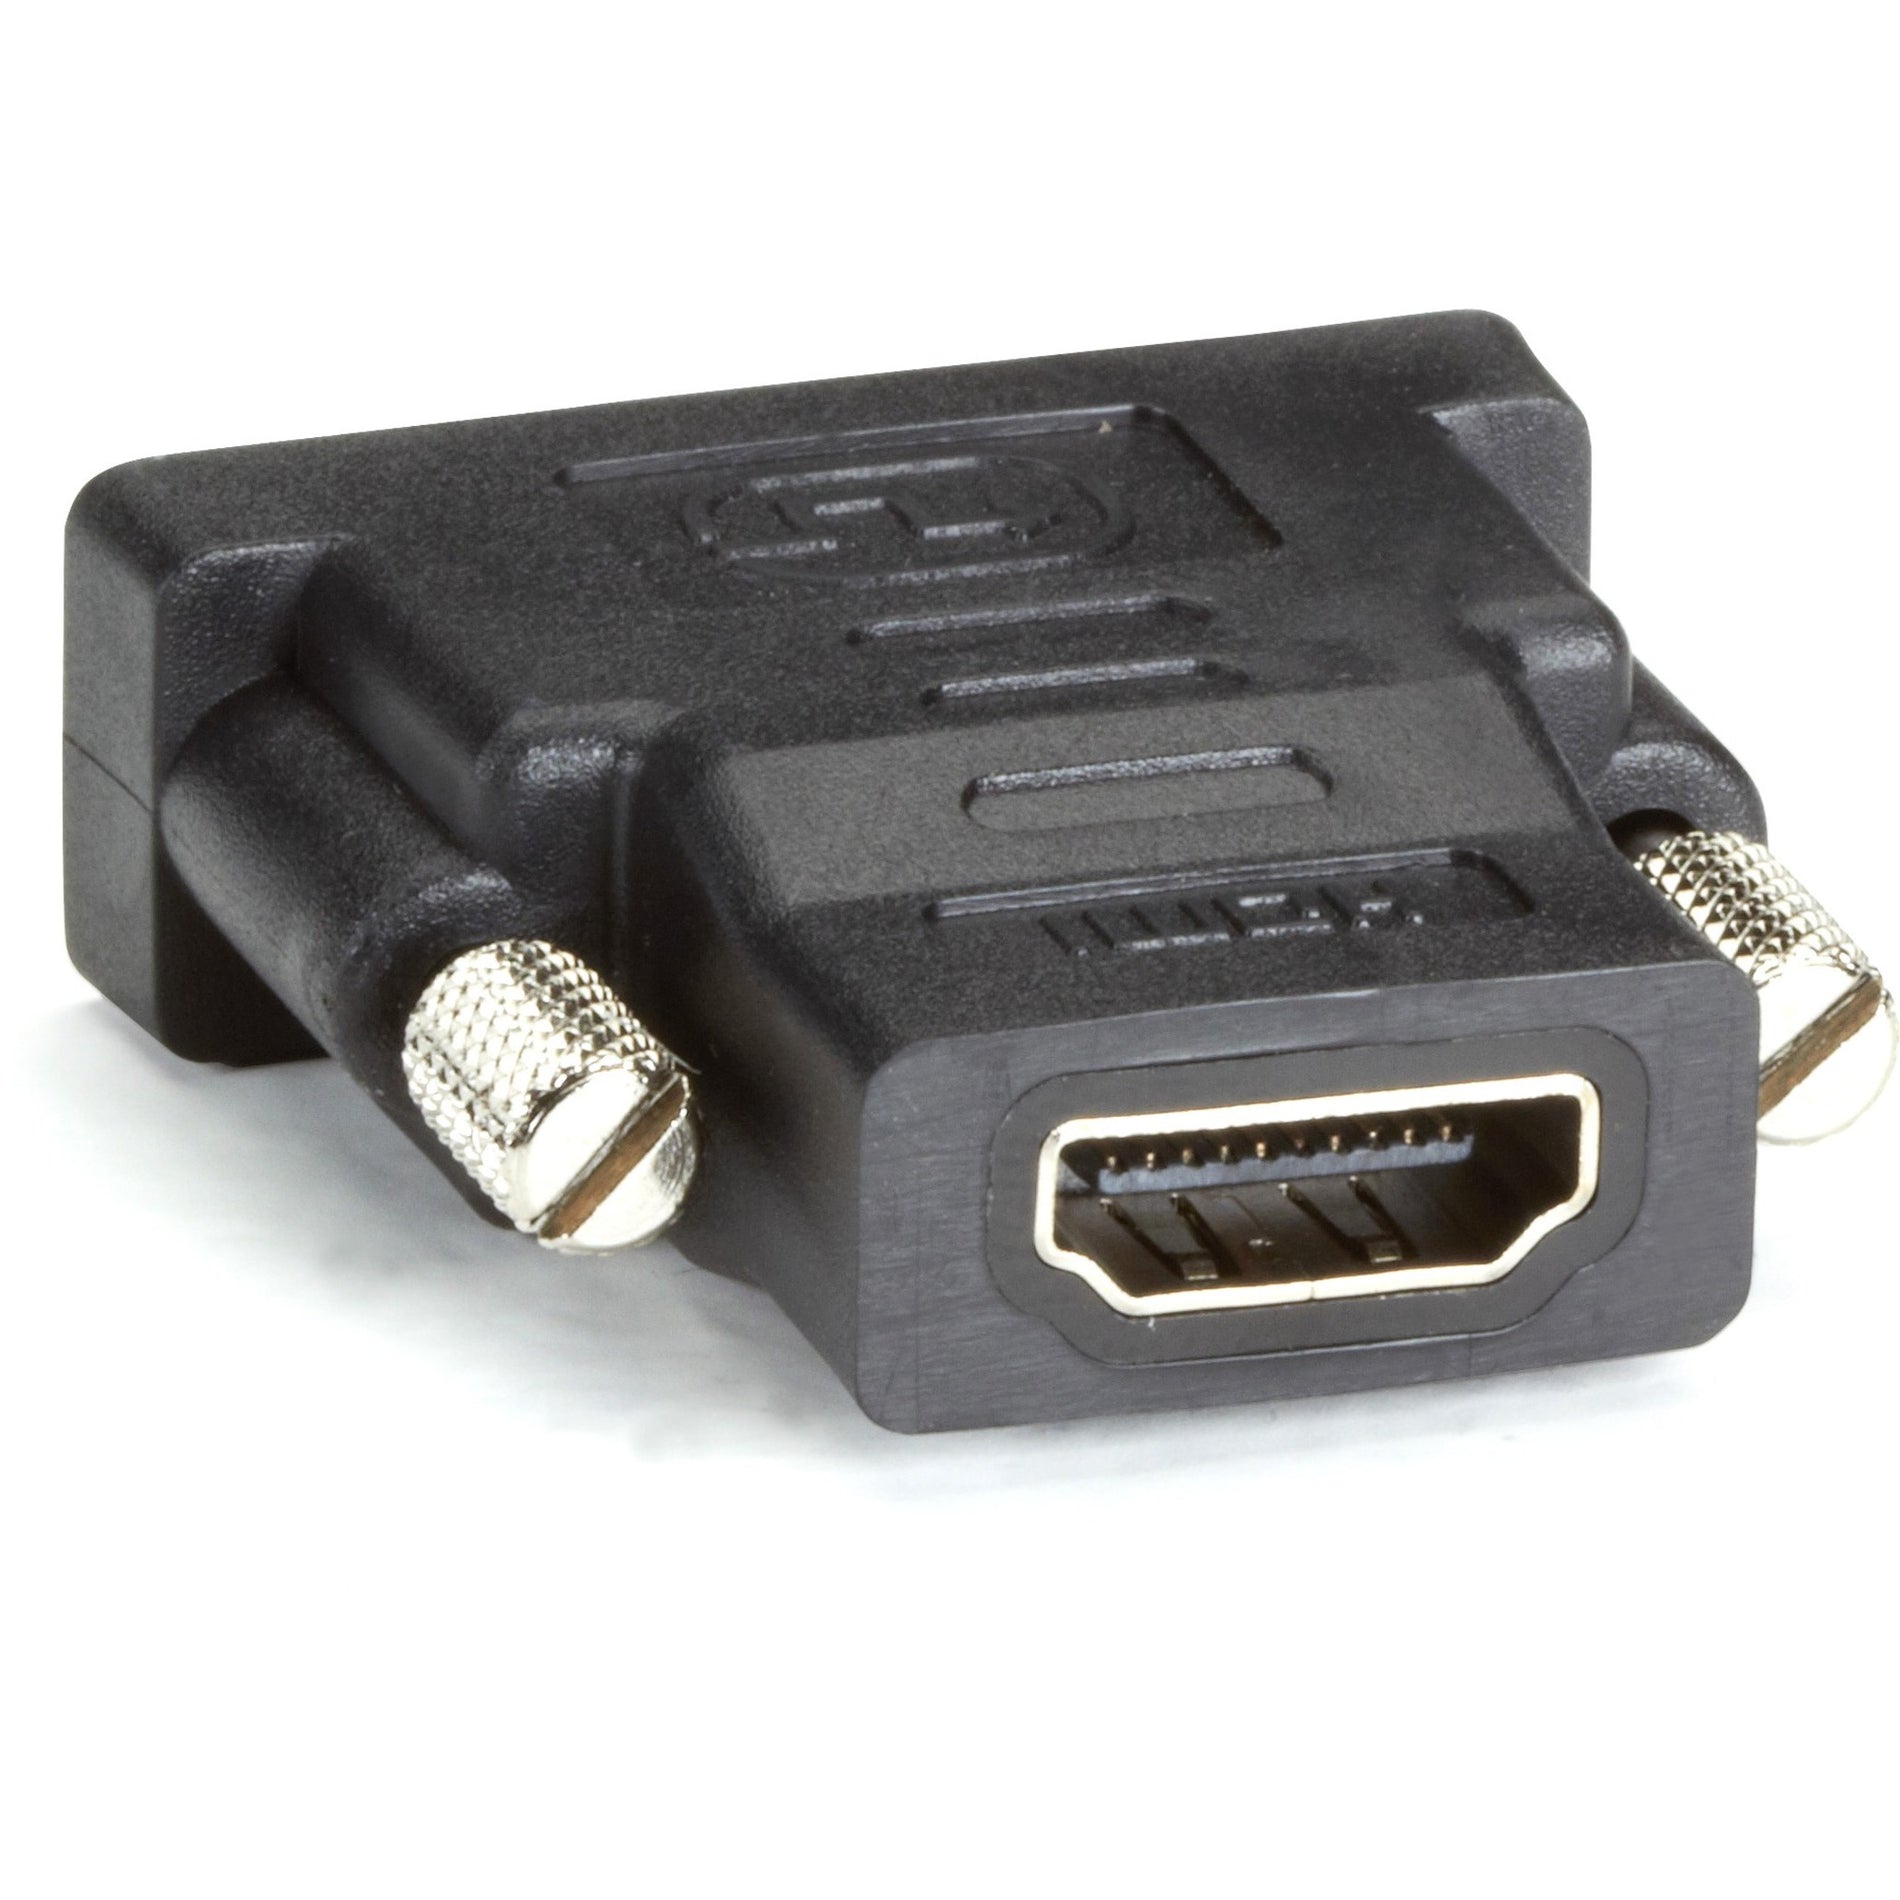 品牌：黑匣子 产品名称：FA795-R2 HDMI 到 DVI-D 适配器，成型，镀镍，终身保修